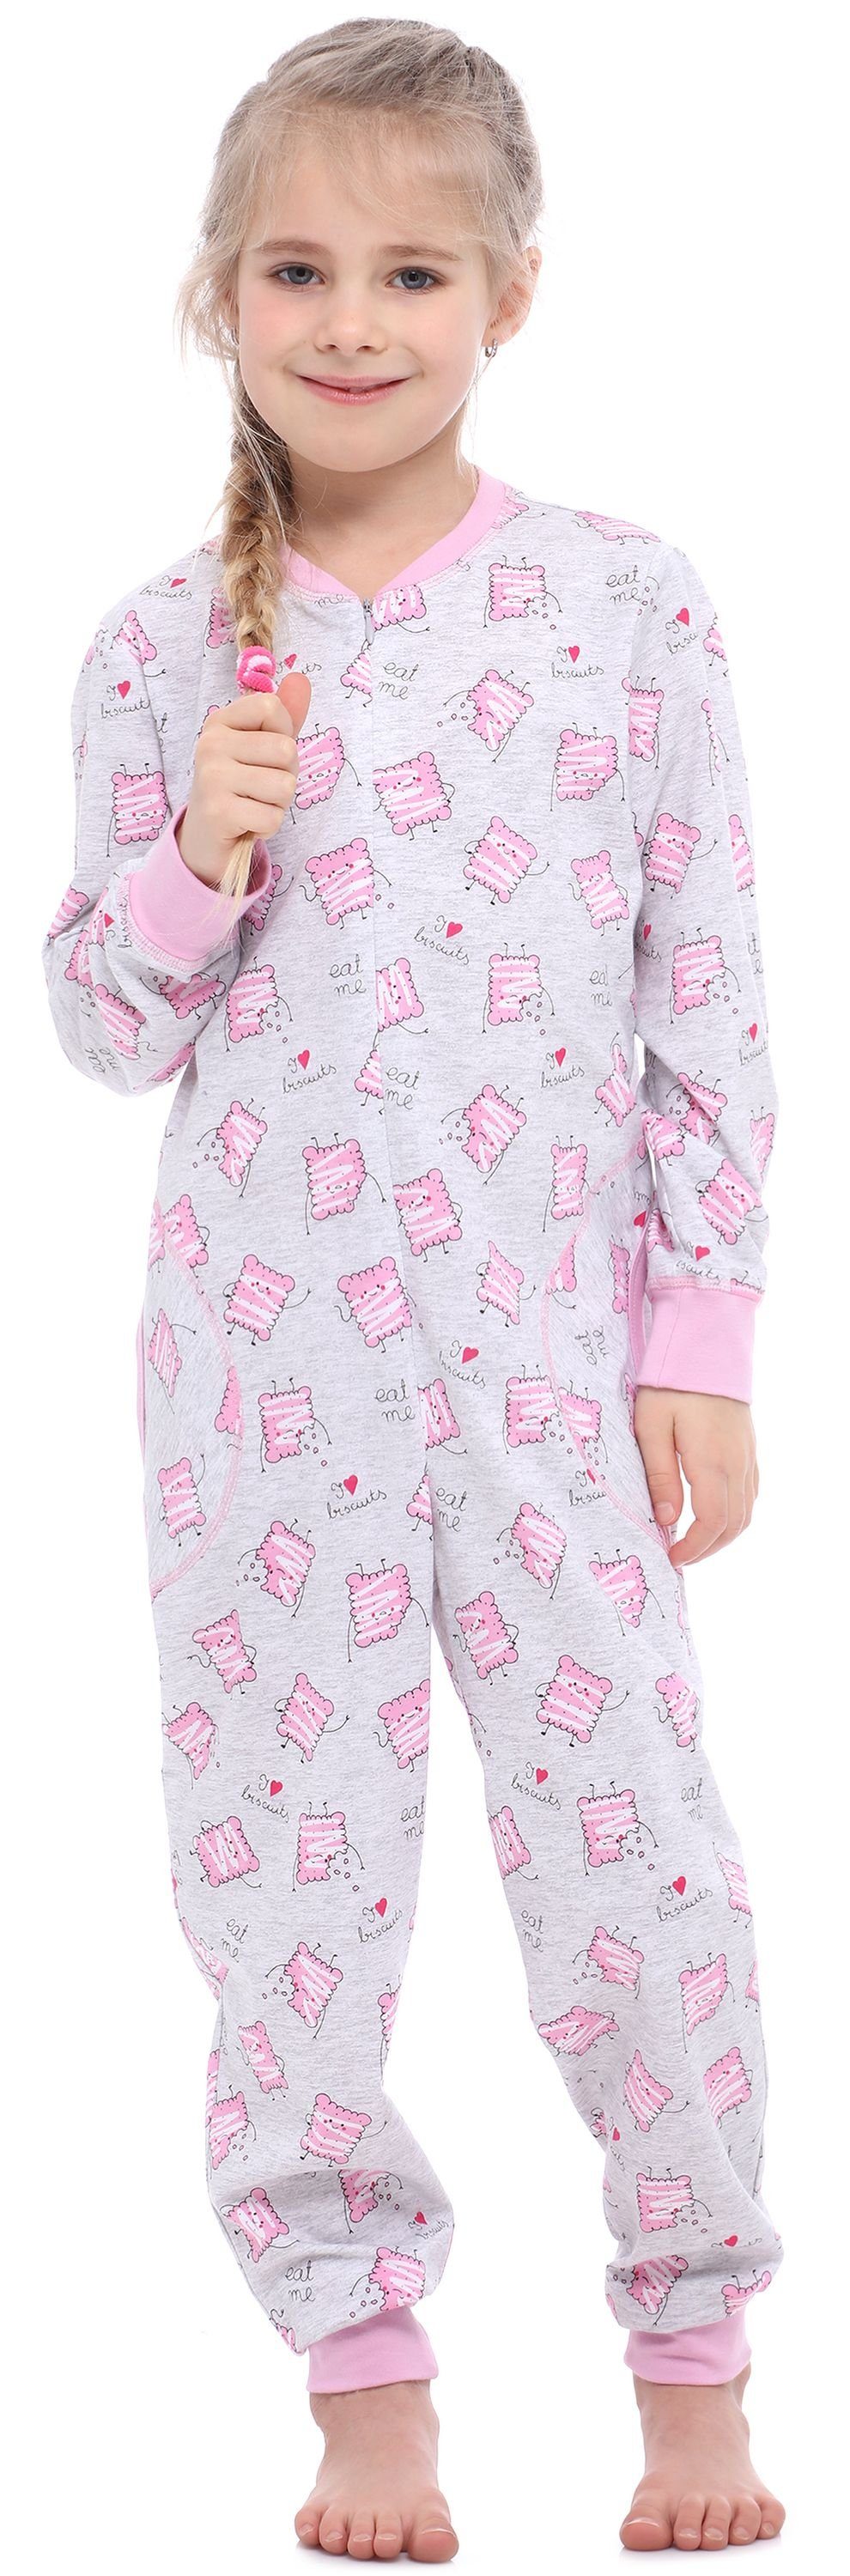 Merry Style Schlafanzug Mädchen Schlafanzug Jumpsuit MS10-186 Melange Kekse